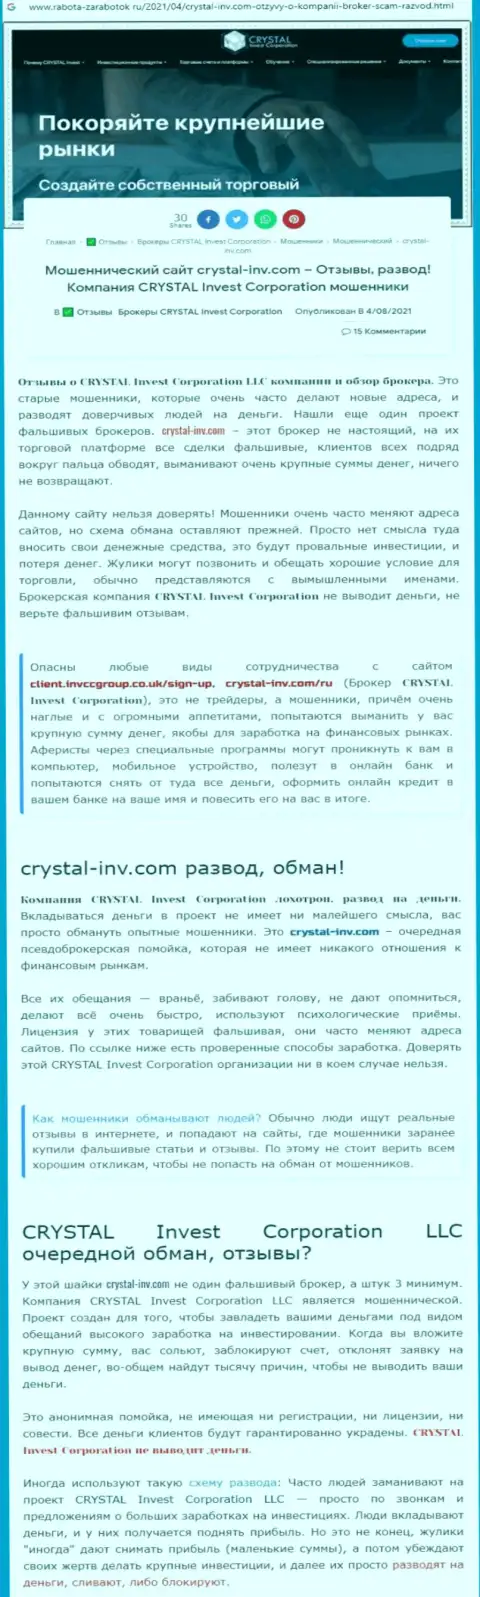 Материал, разоблачающий организацию Crystal Invest Corporation, который взят с сервиса с обзорами мошеннических действий различных контор